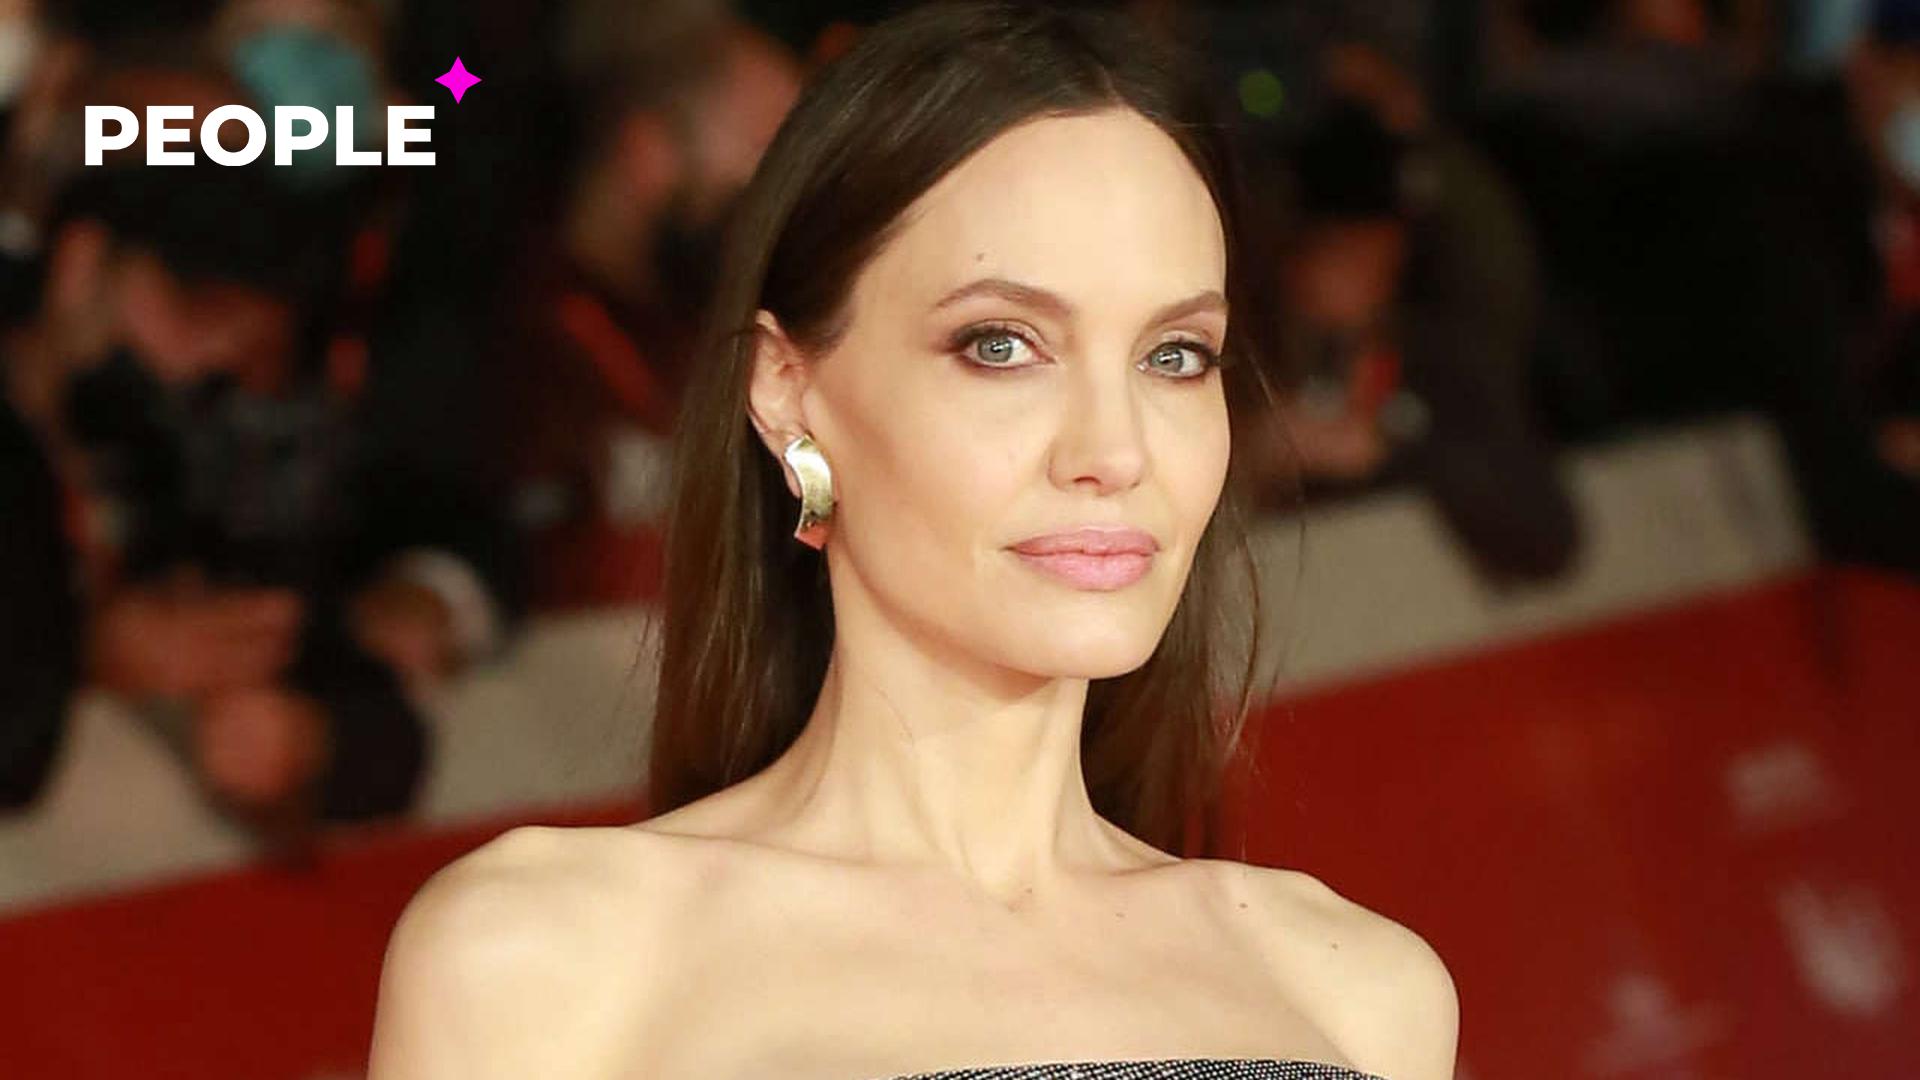 Анджелина Джоли была замечена в одном из кафе в Украине — видео